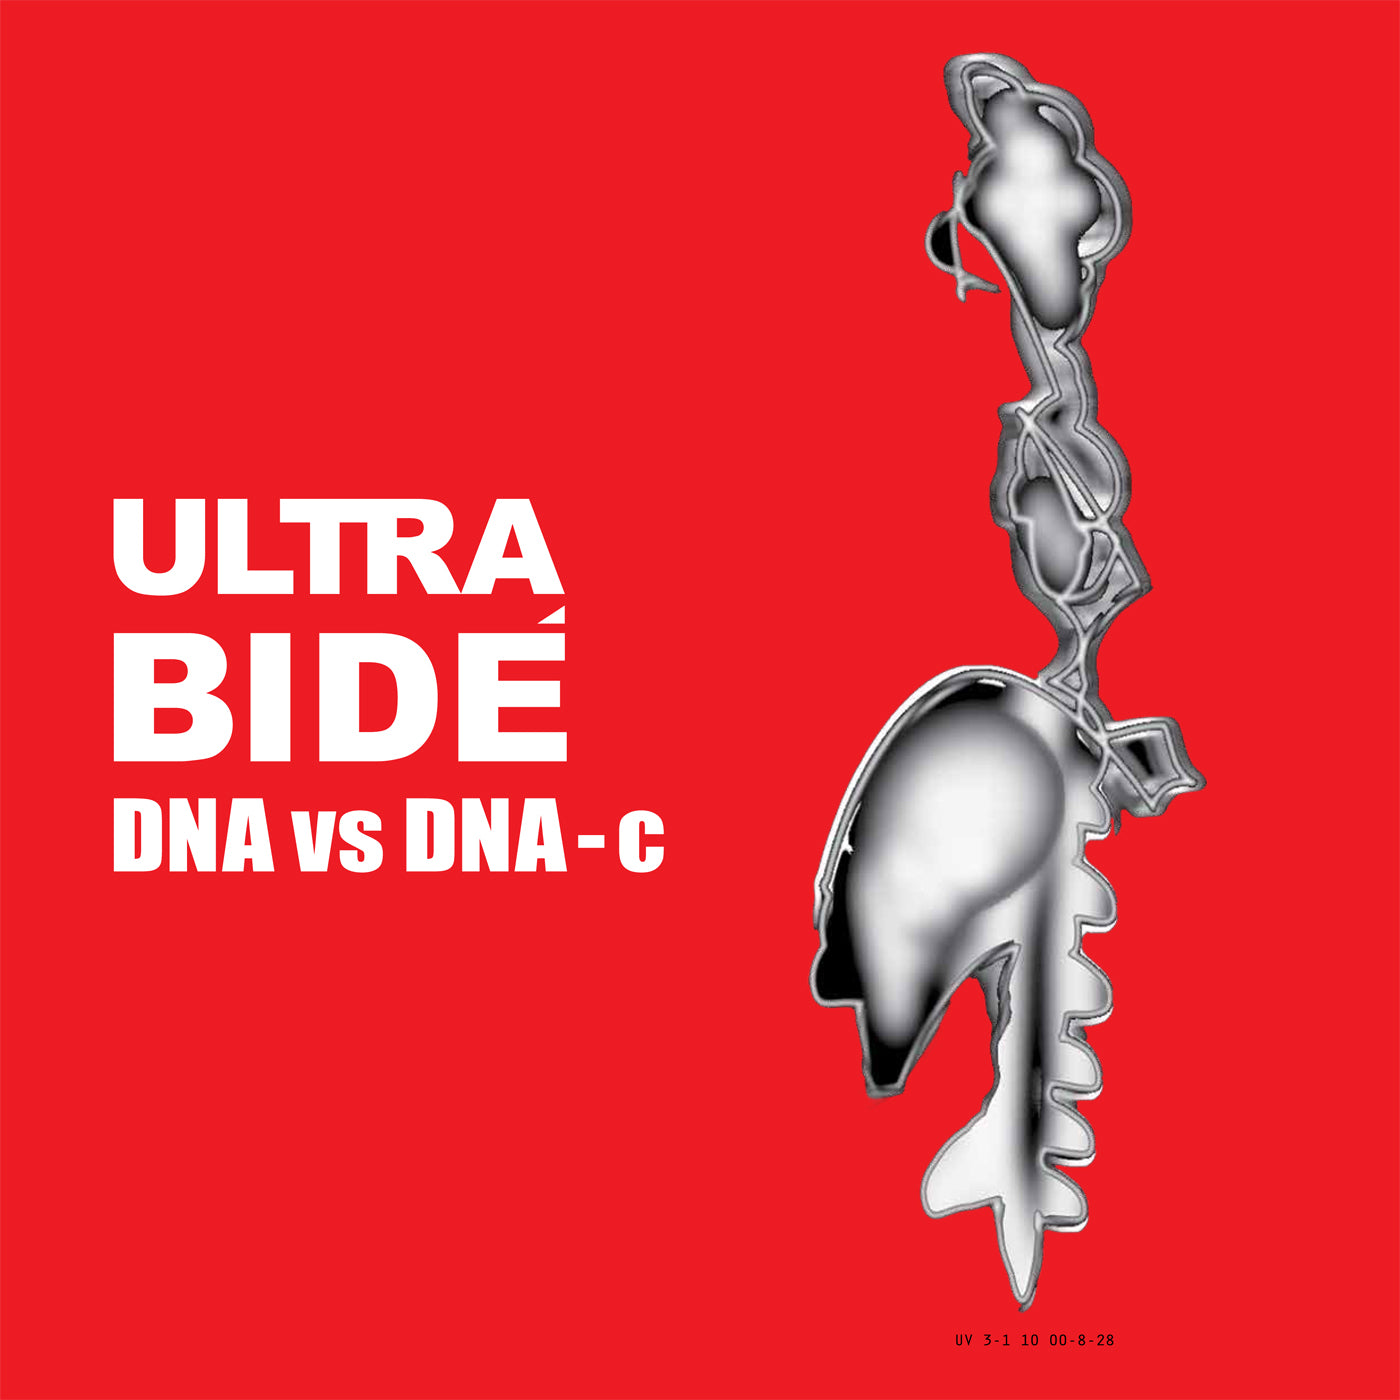 v458 - Ultra Bidé - "DNA vs DNA-c"